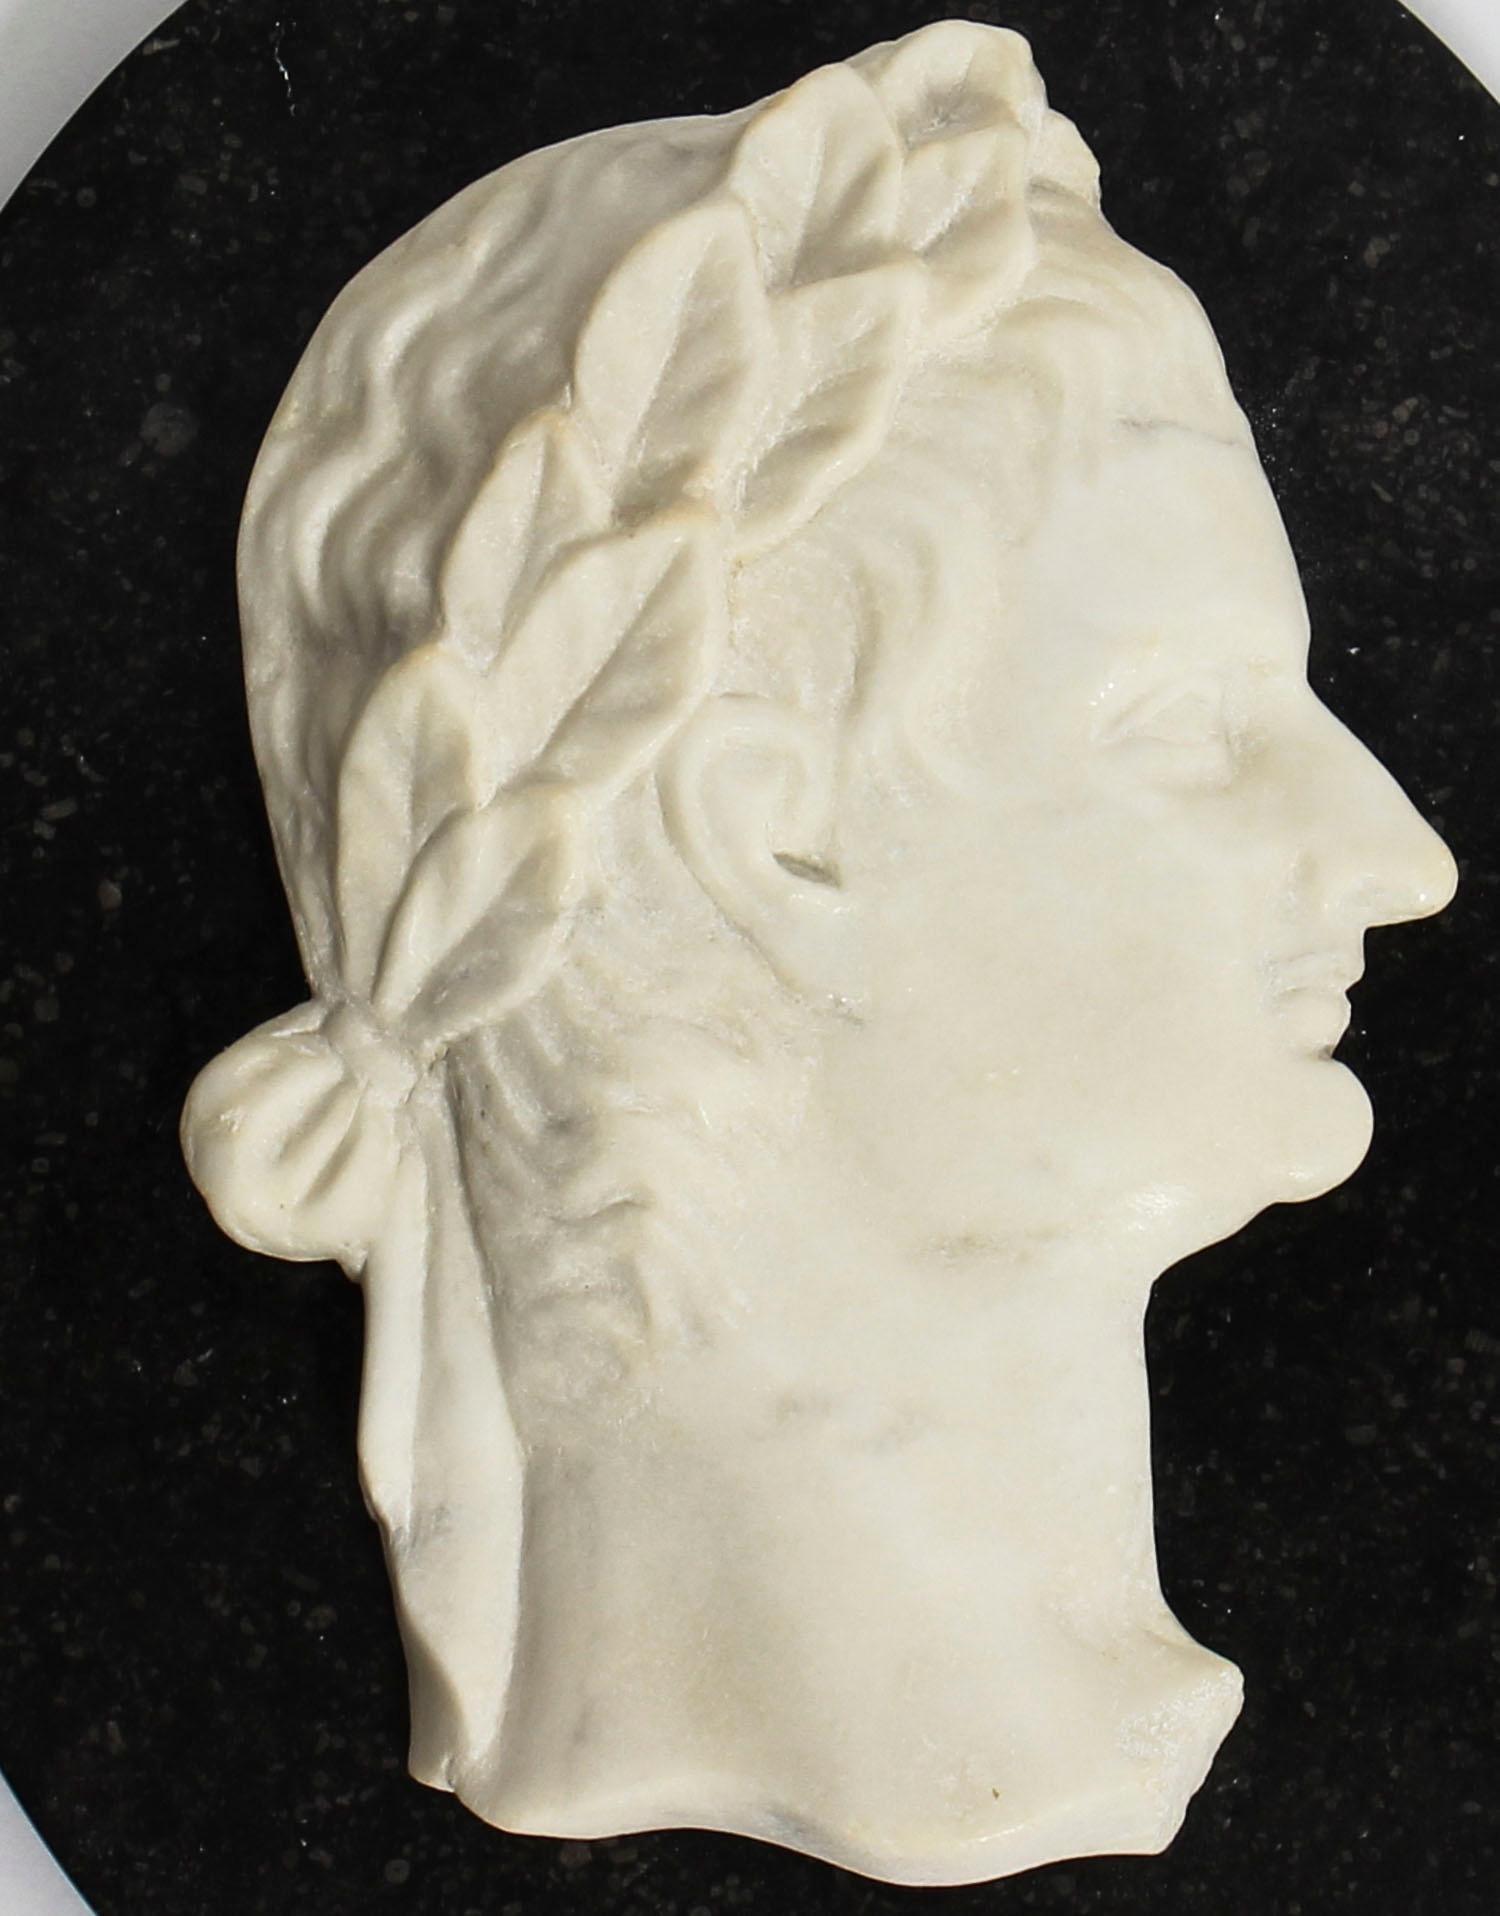 Il s'agit d'un magnifique buste italien en marbre blanc de Carrare représentant l'empereur romain Claude, datant du milieu du XIXe siècle.

La plaque Grand Tour, délicatement sculptée, représente le profil de Claudius avec une couronne de laurier